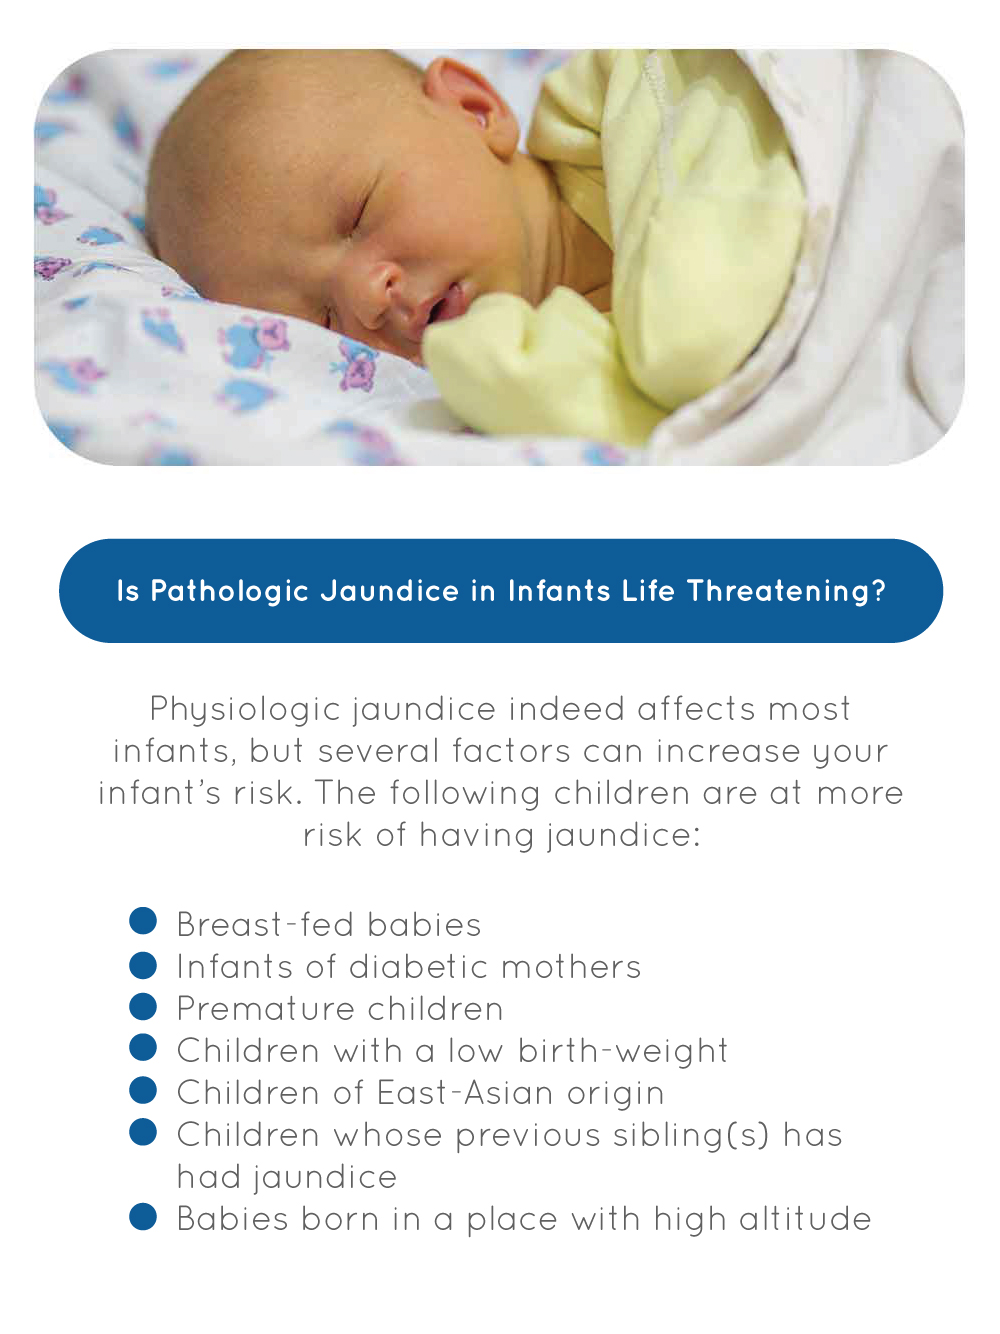 Is Pathologic Jaundice in Infants Life Threatening?